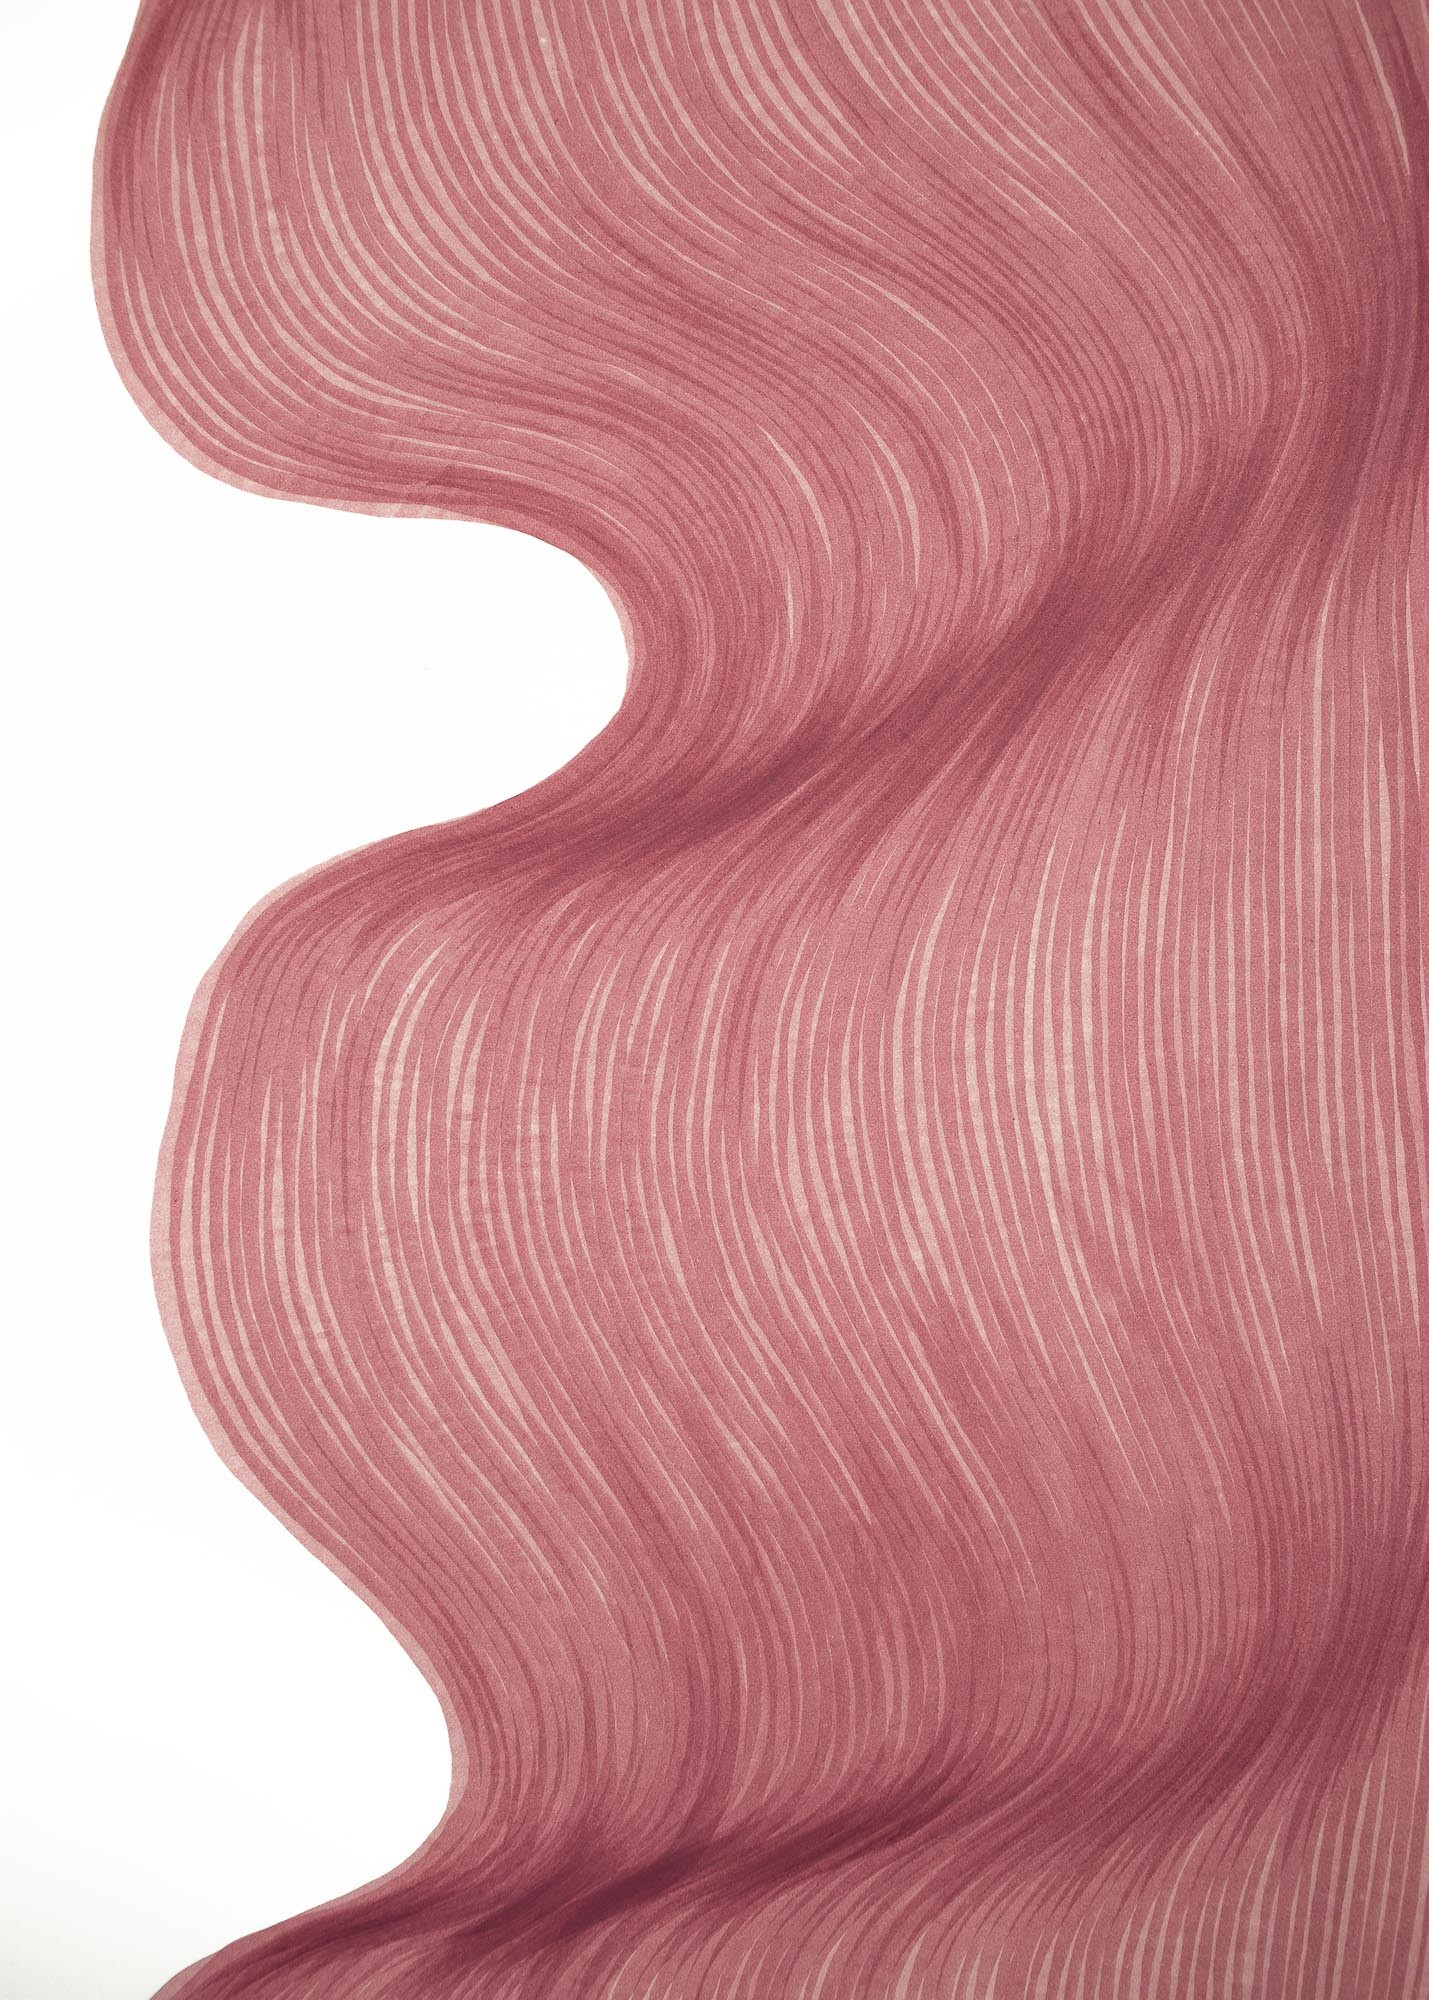 Raspberry Cream Fold | Lali Torma | Zeichnung | Kalligraphie Tinte auf Papier - Detail